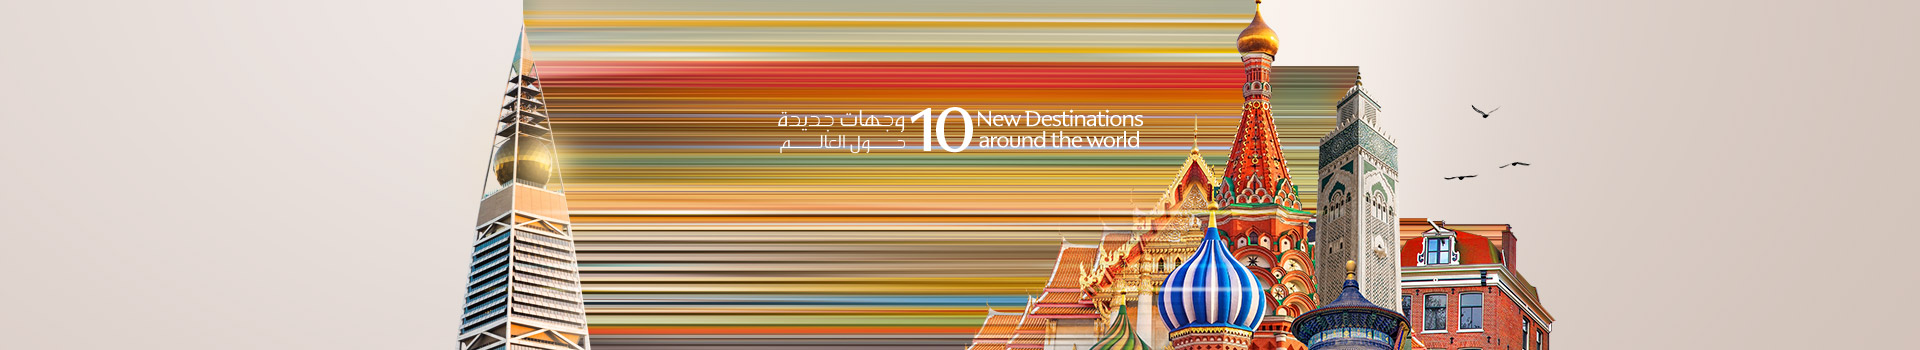 saudia 10 new destinations